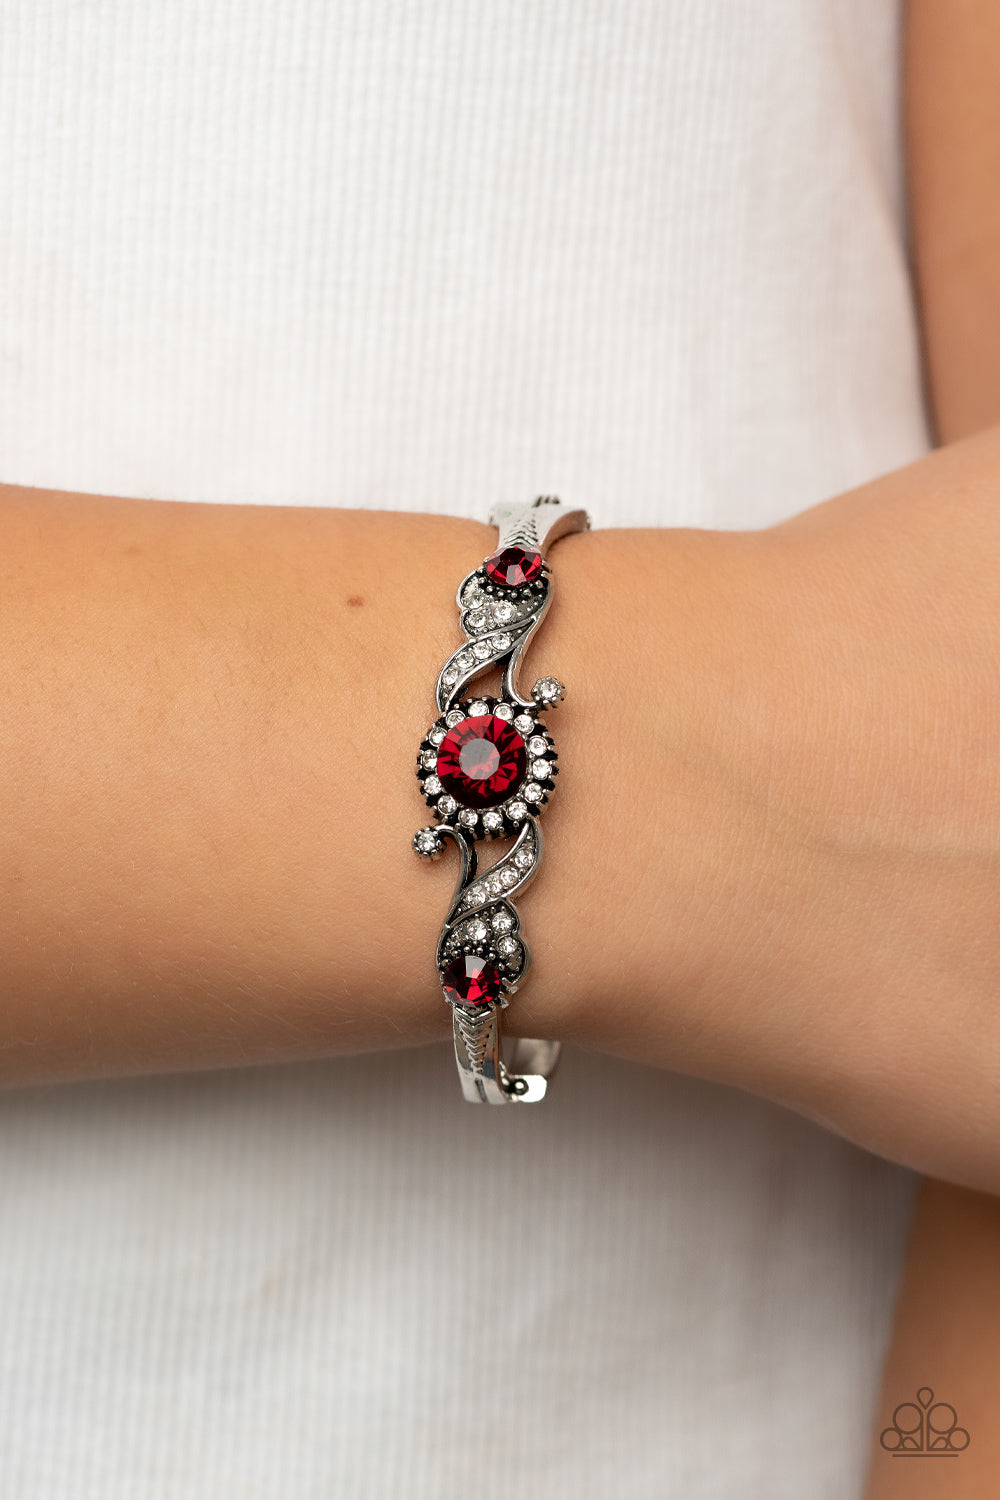 Paparazzi “Vintage Vault” “Expert Elegance” Red Hinged Bracelet - Cindysblingboutique